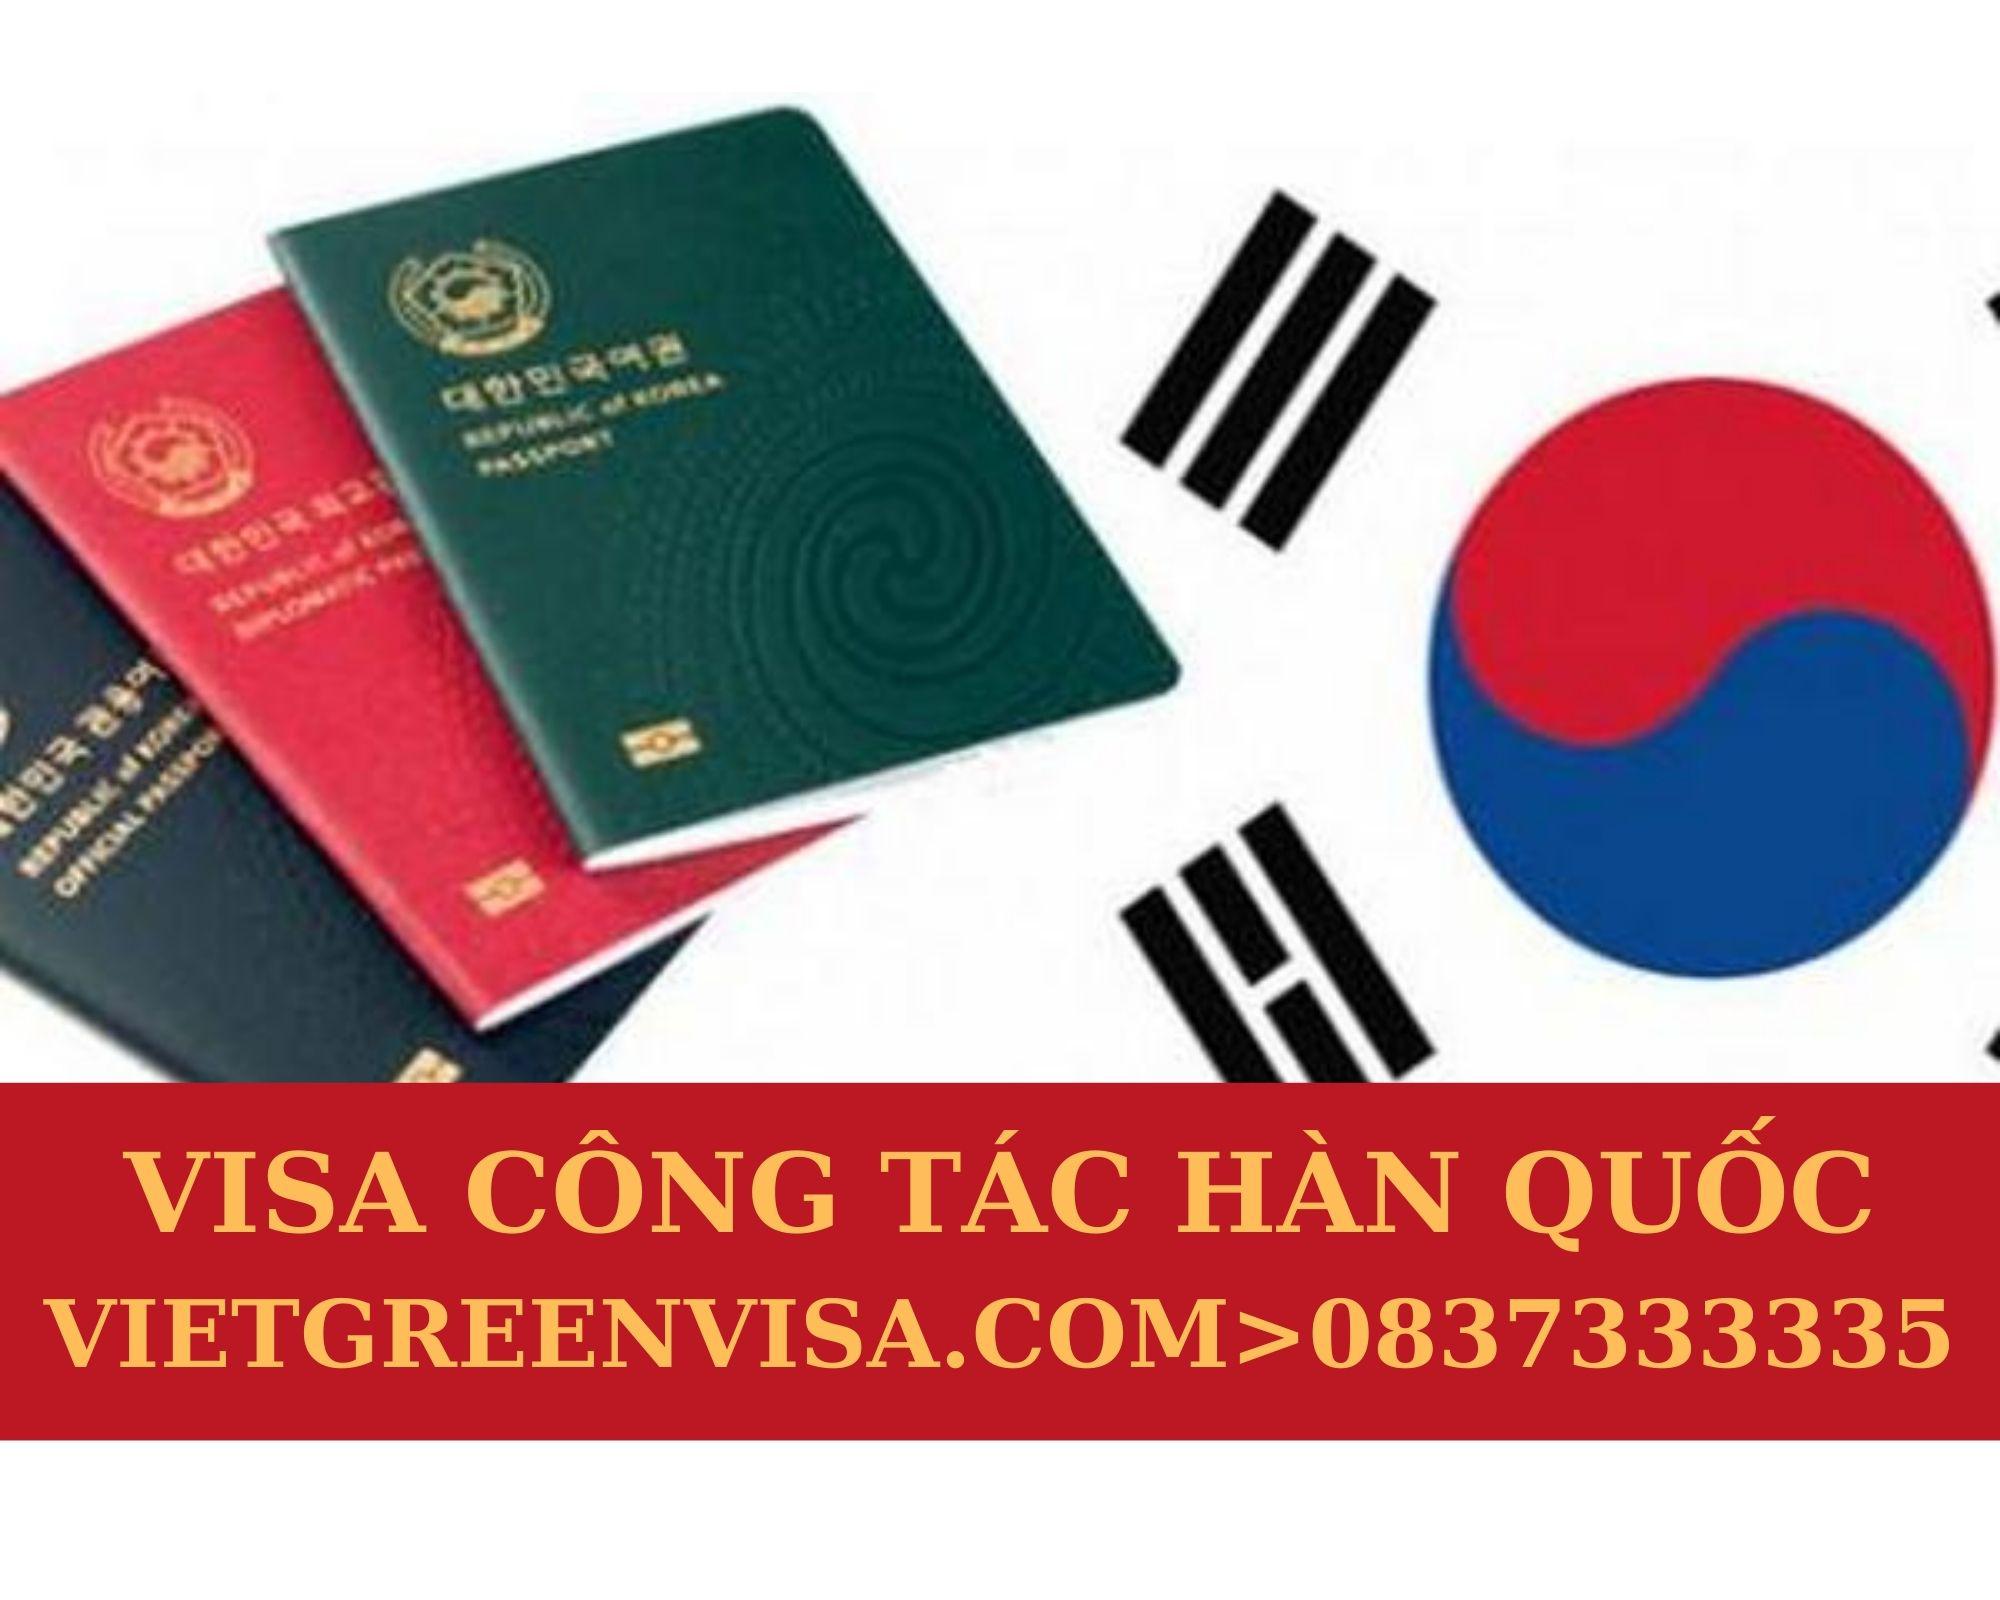 Dịch vụ làm visa công tác Hàn Quốc uy tín , Thủ tục làm visa công tác Hàn Quốc, Hồ sơ visa Hàn Quốc công tác, Xin visa đi Hàn Quốc công tác nhanh chóng